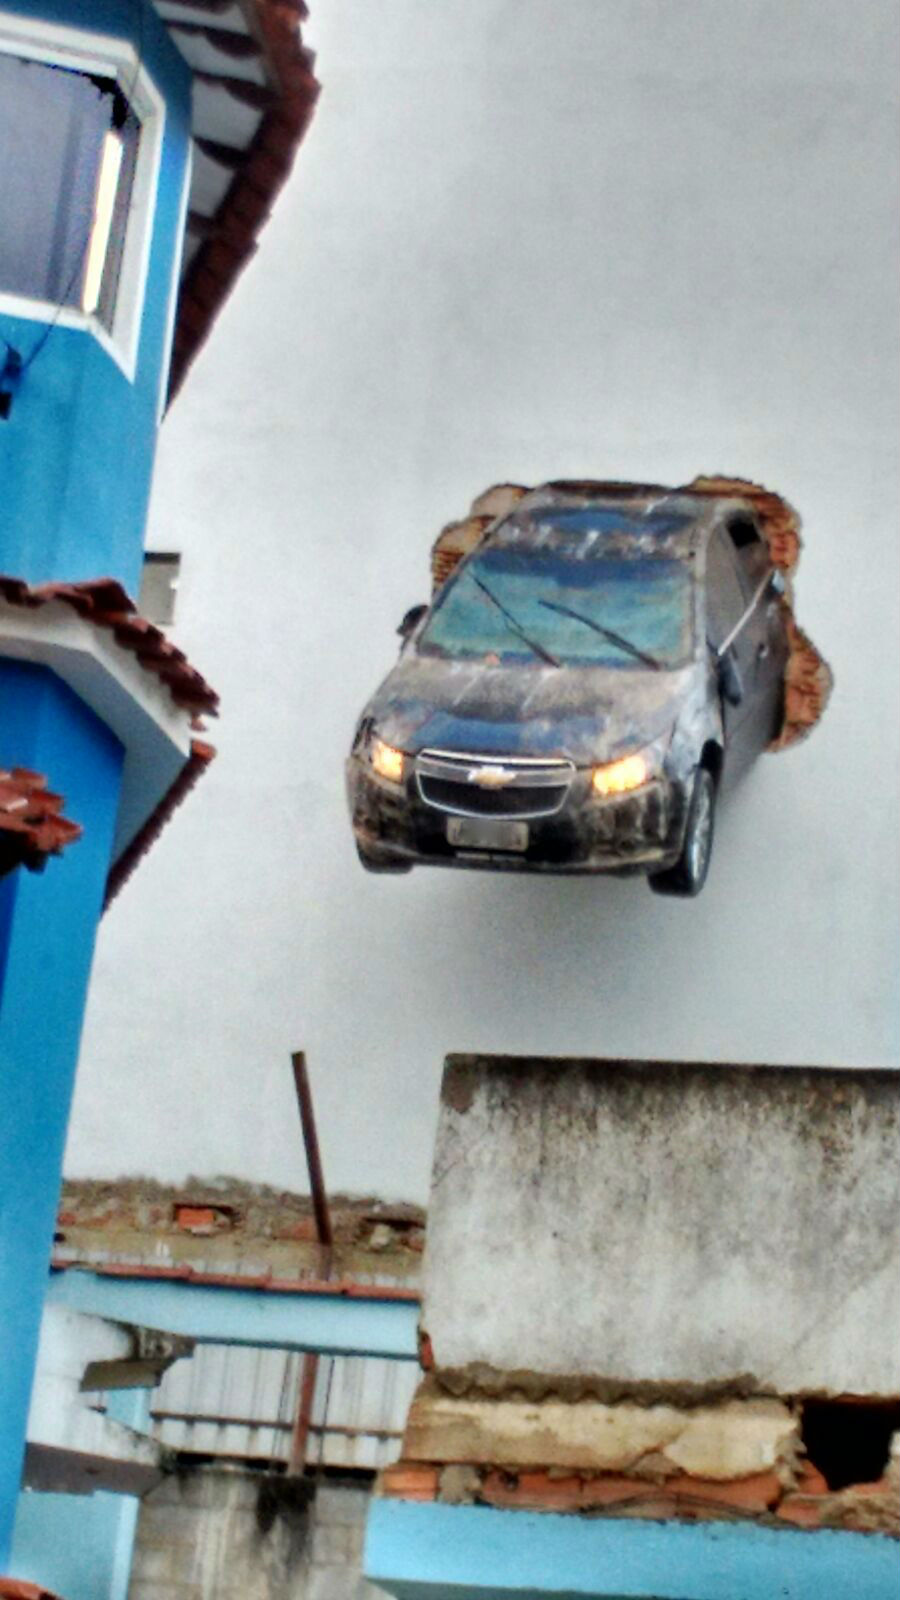 Motorista acelera em garagem e carro fica
pendurado (Foto: Divulgação/Polícia Militar)